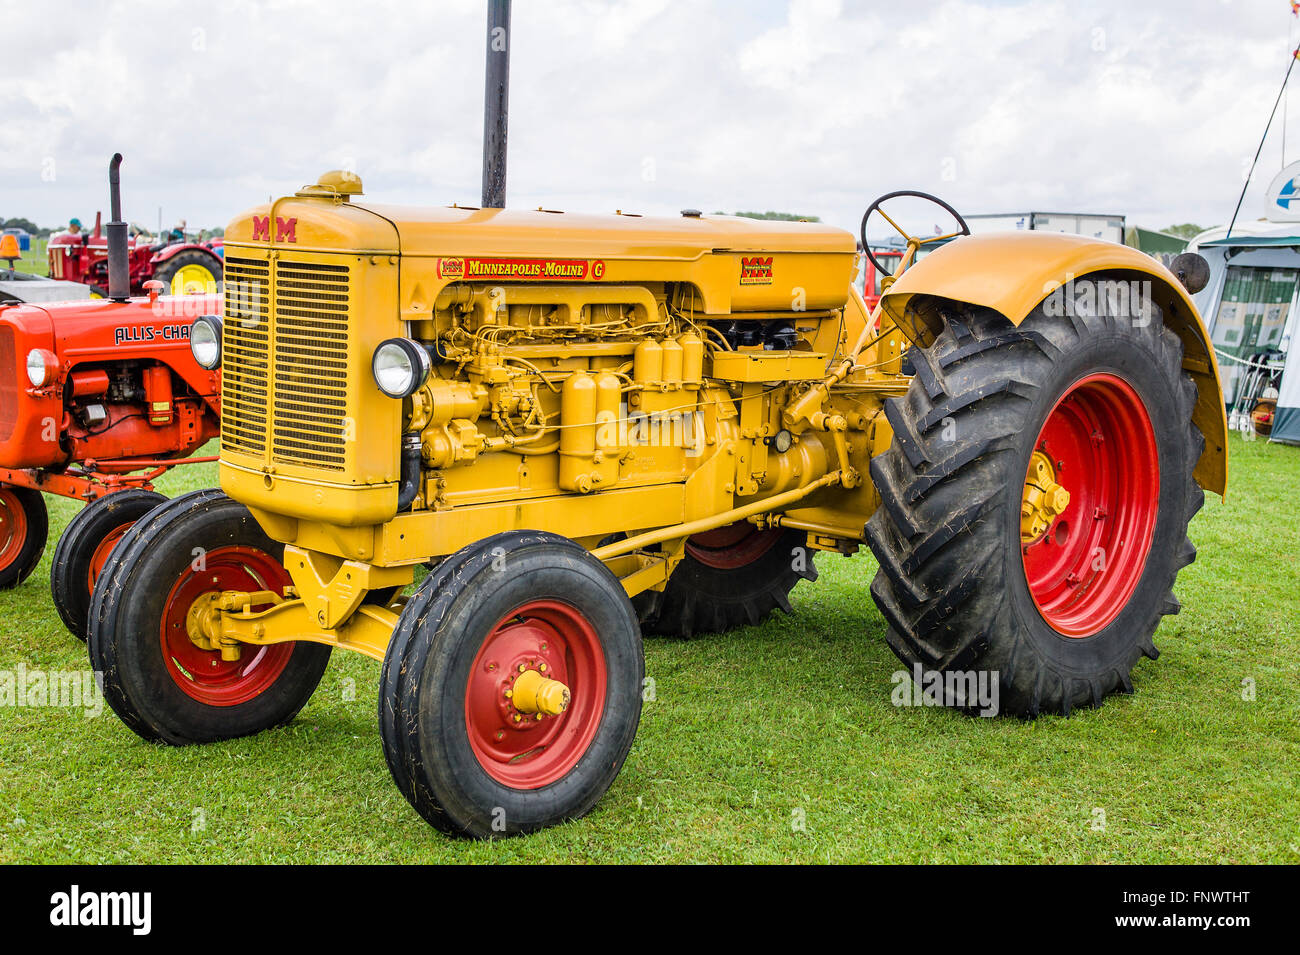 Tracteur agricole ancien Minneapolis Moline sur show en UK Banque D'Images